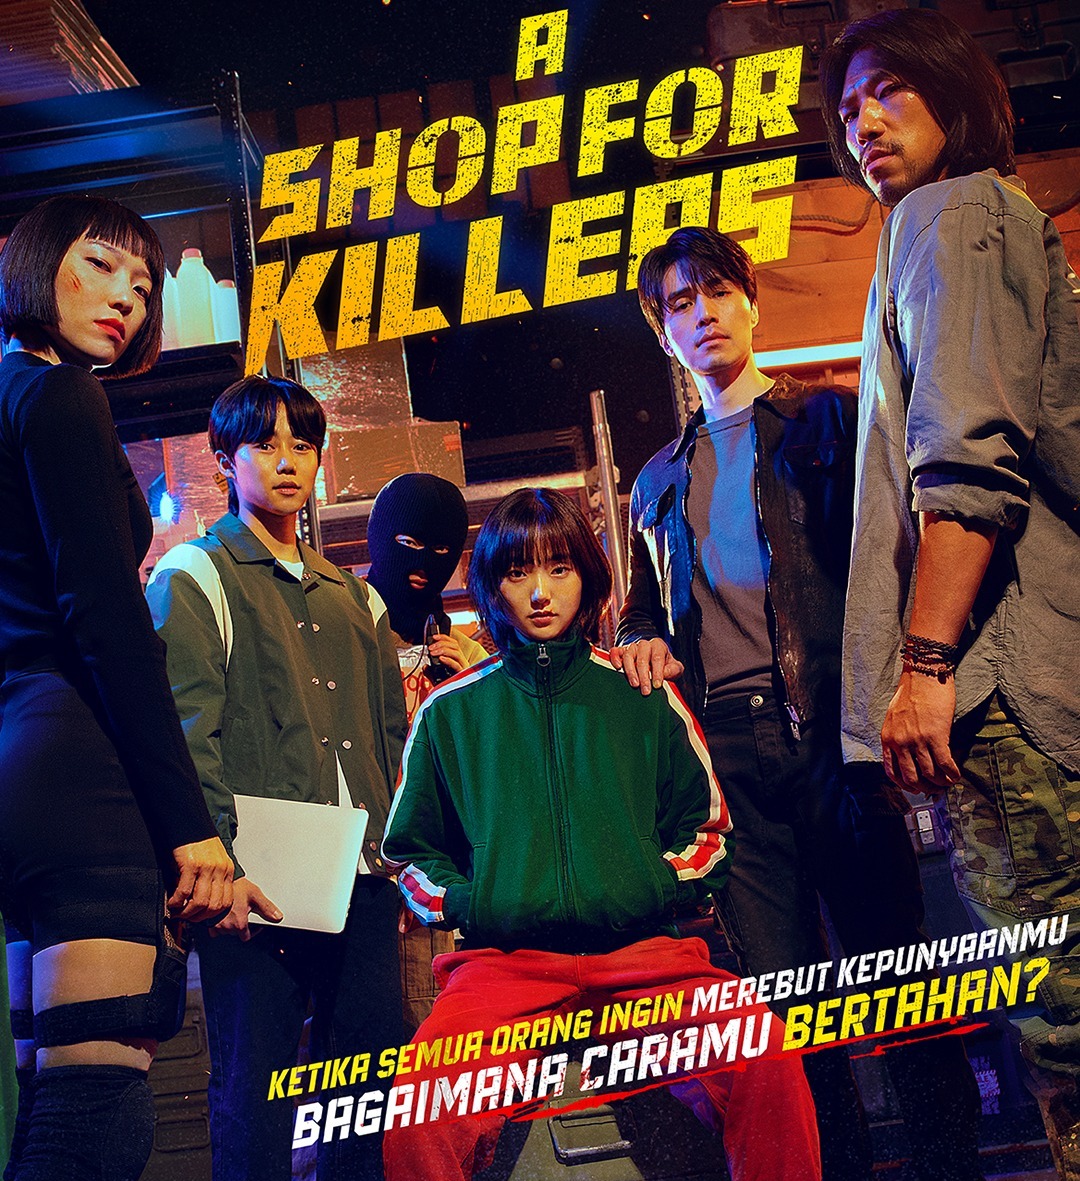 Serial A Shop For Killers Tayang Setiap Rabu, Berikut Sinopsis Lengkap dan Cerita Behind The Scene dari Sutrad